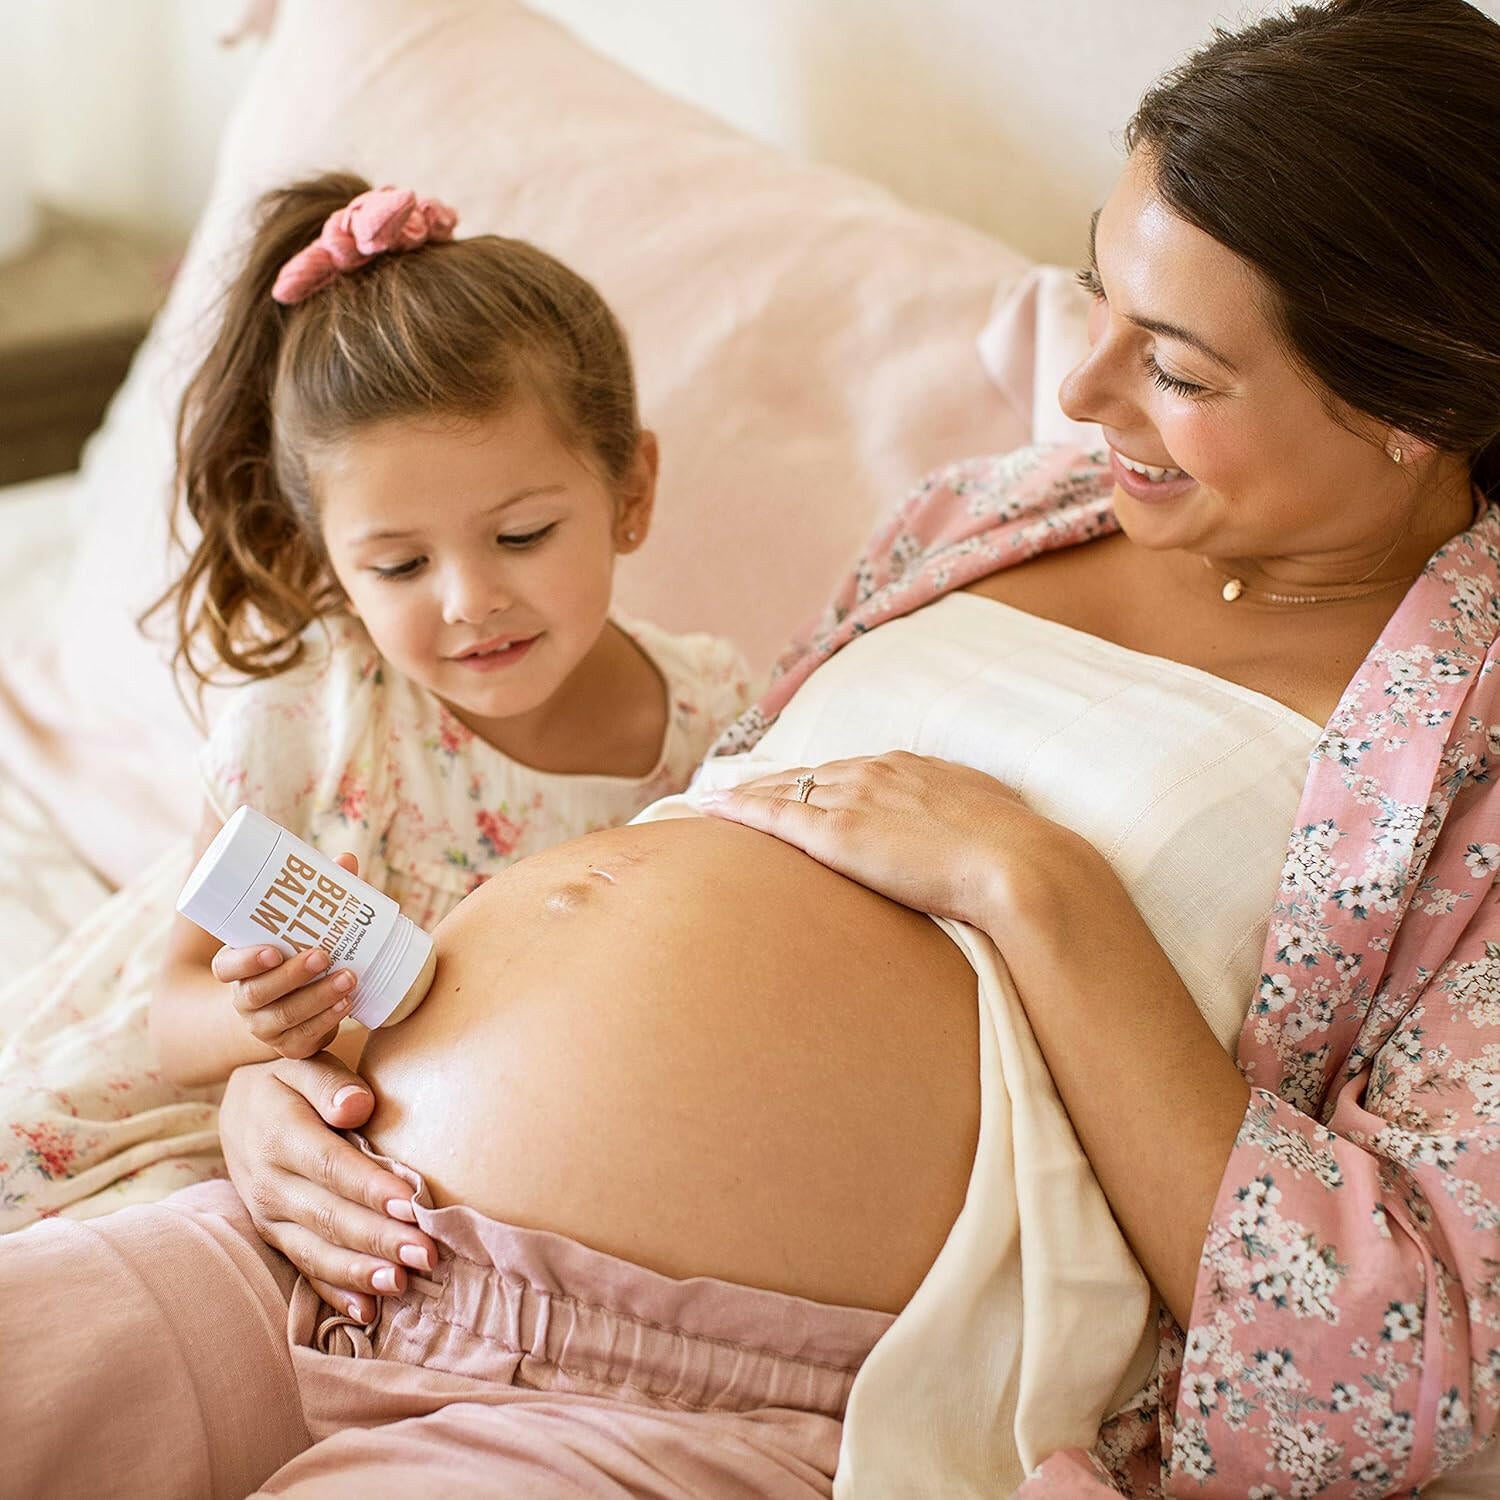 بلسم البطن الملتوي من مانشكين ميلك ميكرز، طبيعي بالكامل ومرطب للعناية بالبشرة أثناء الحمل